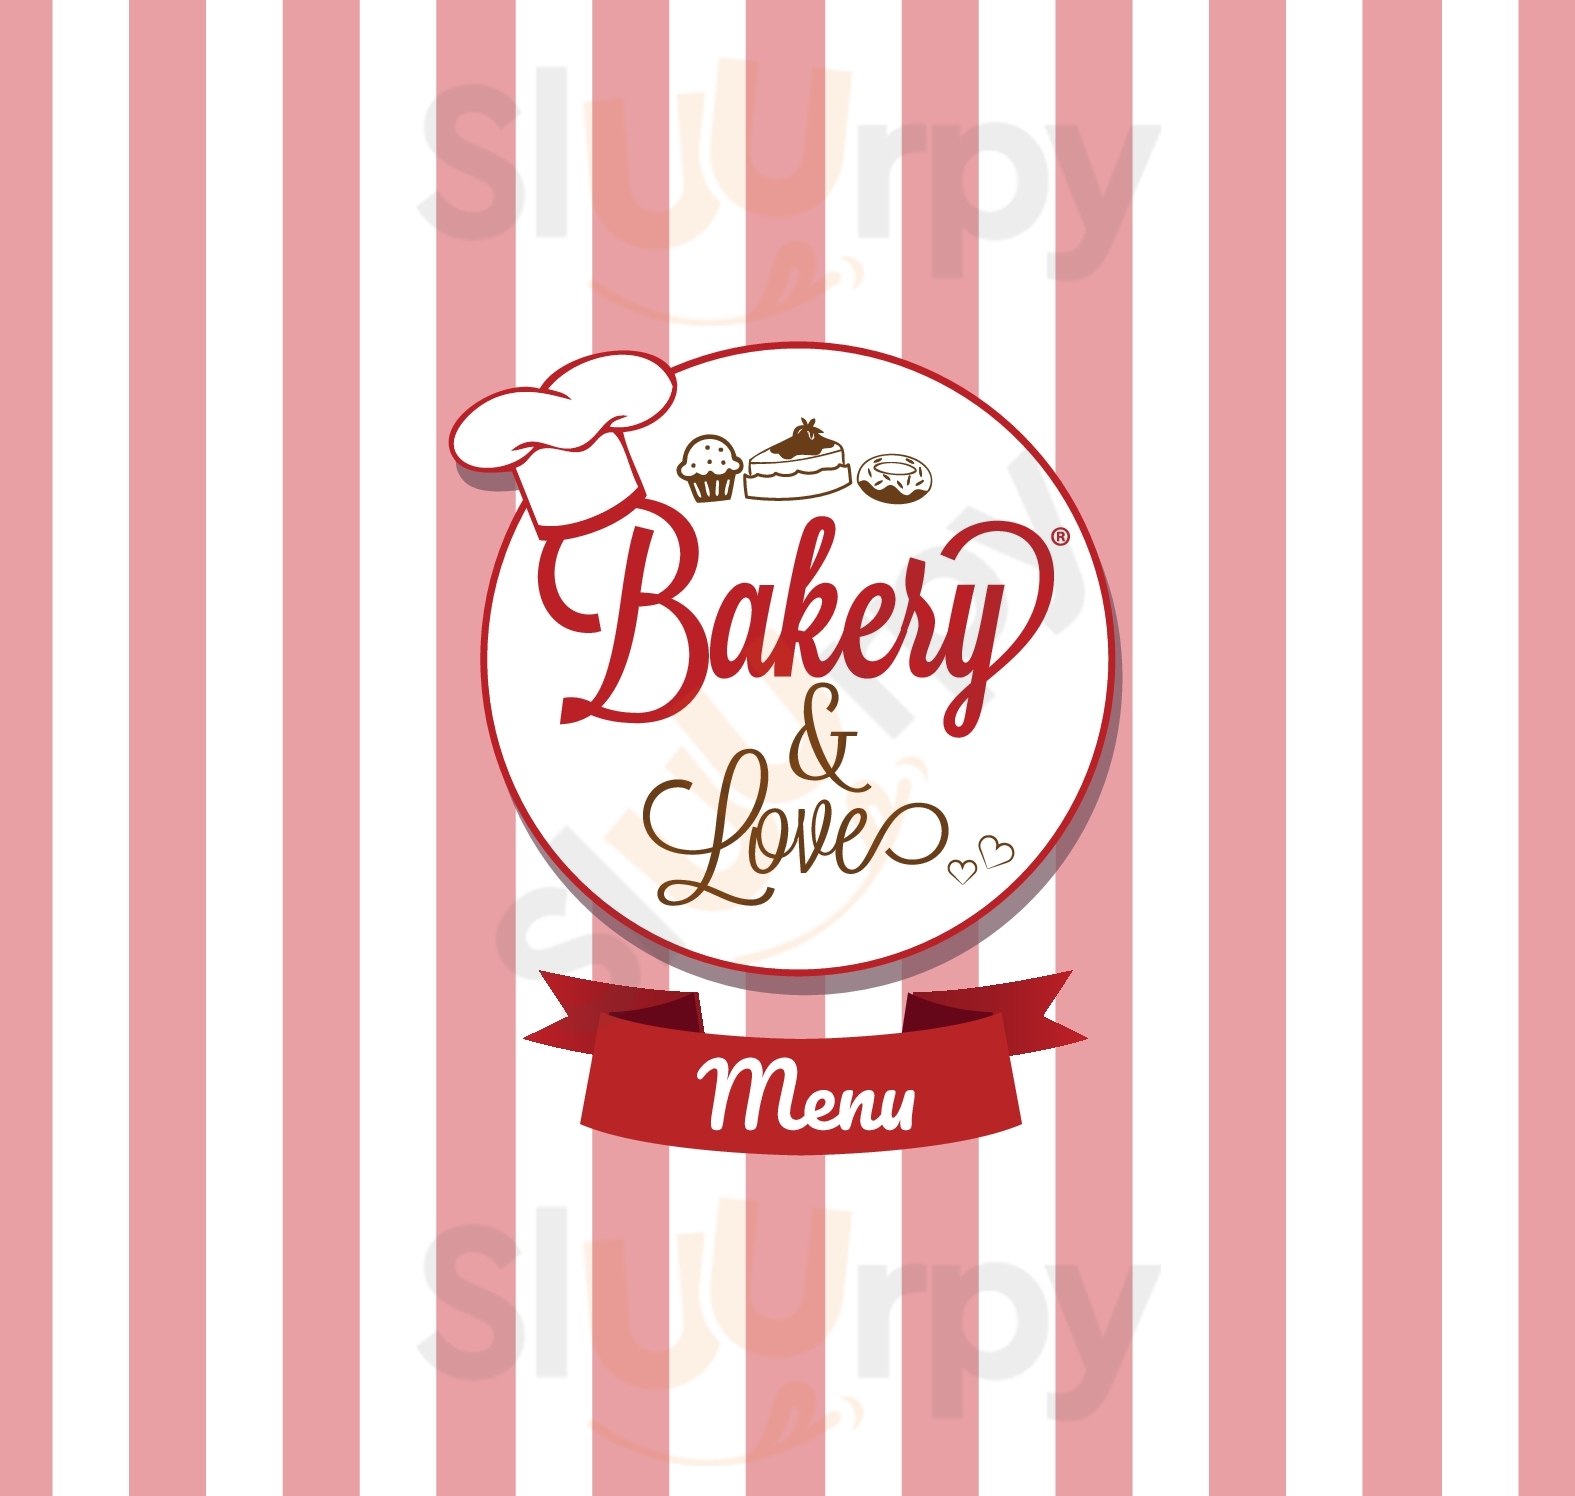 Bakery & Love Vomero Napoli menù 1 pagina